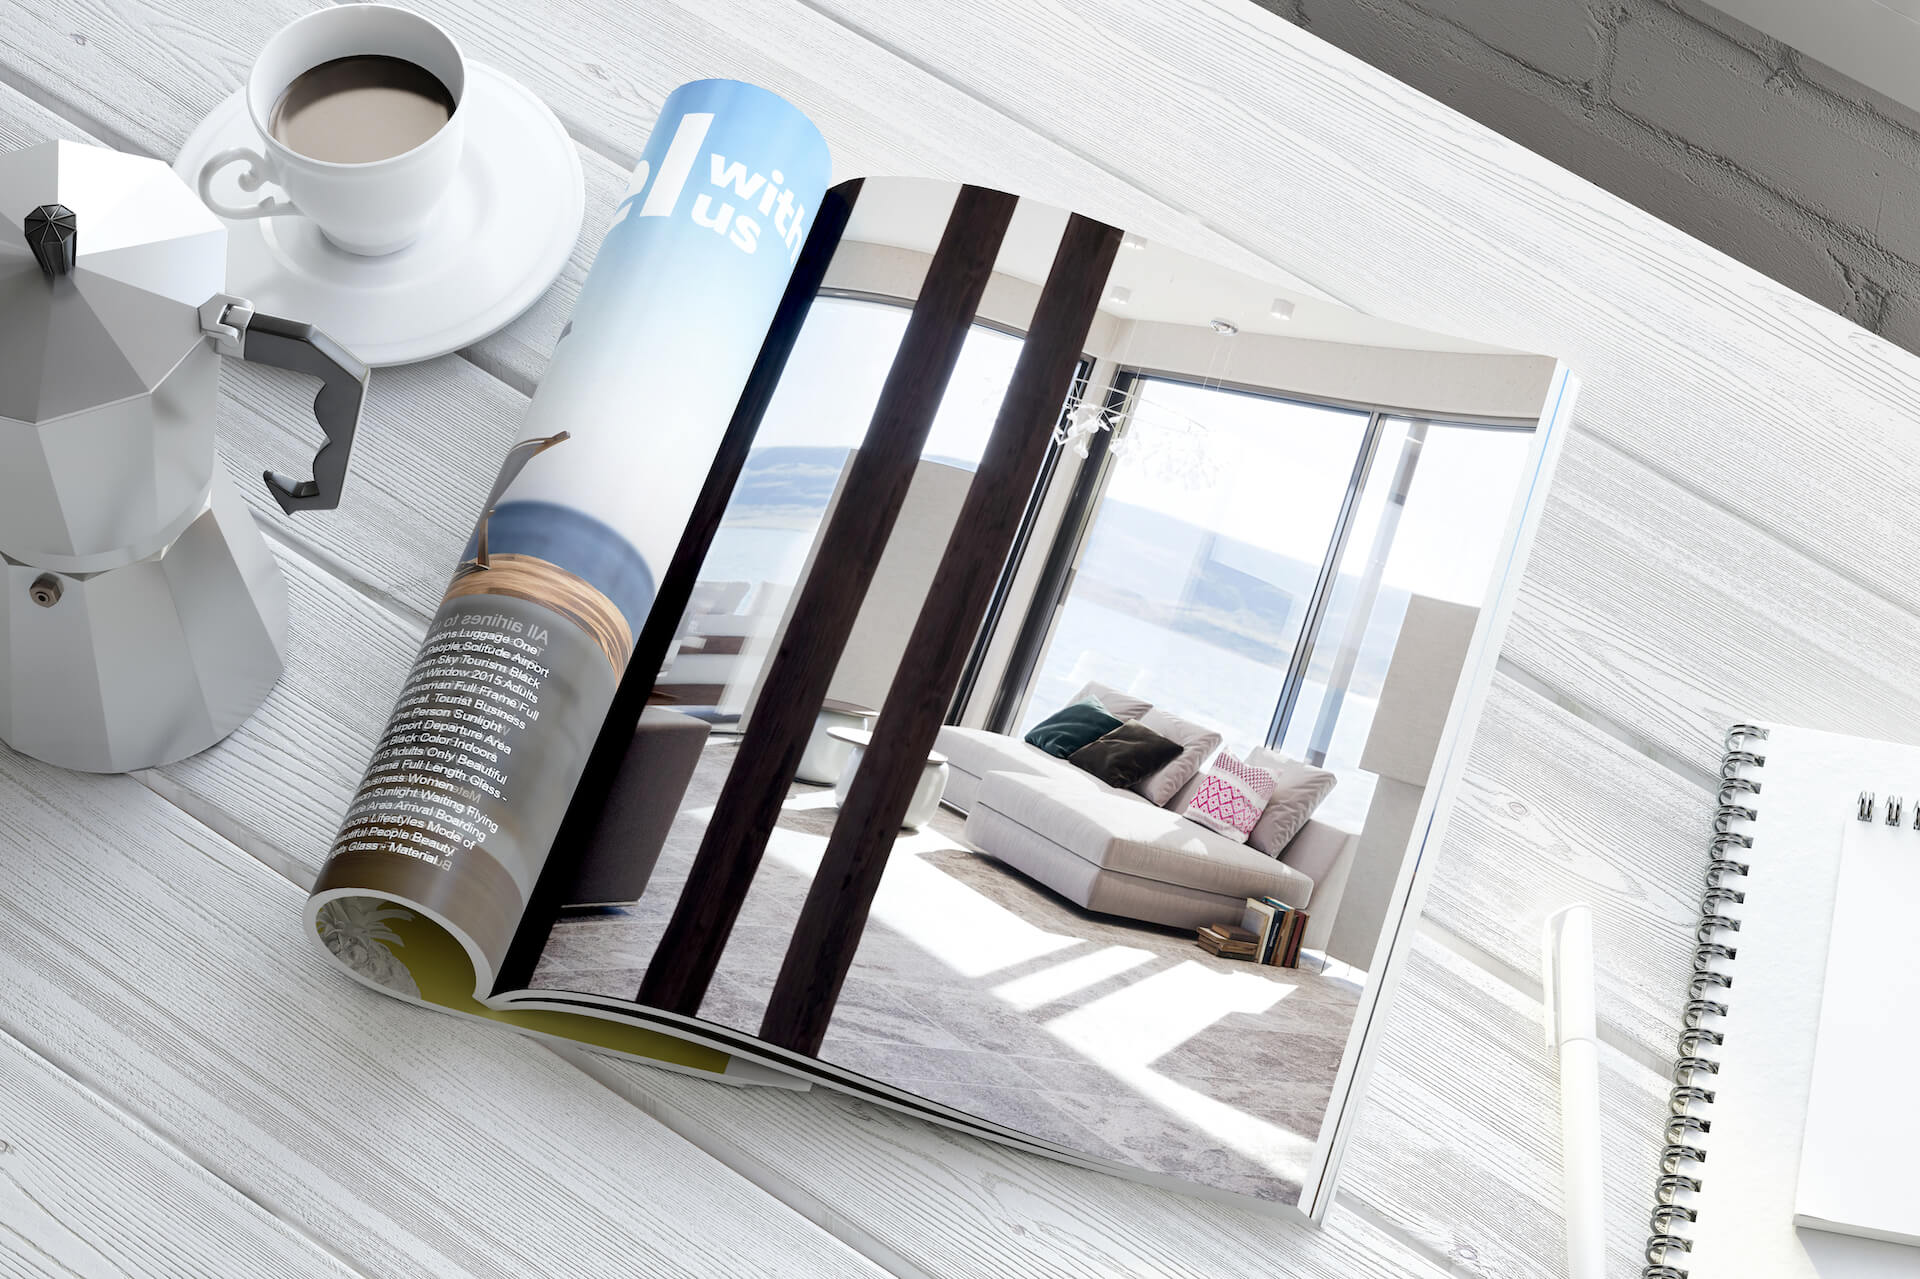 3D Rendering Featured in Interior Design Magazine